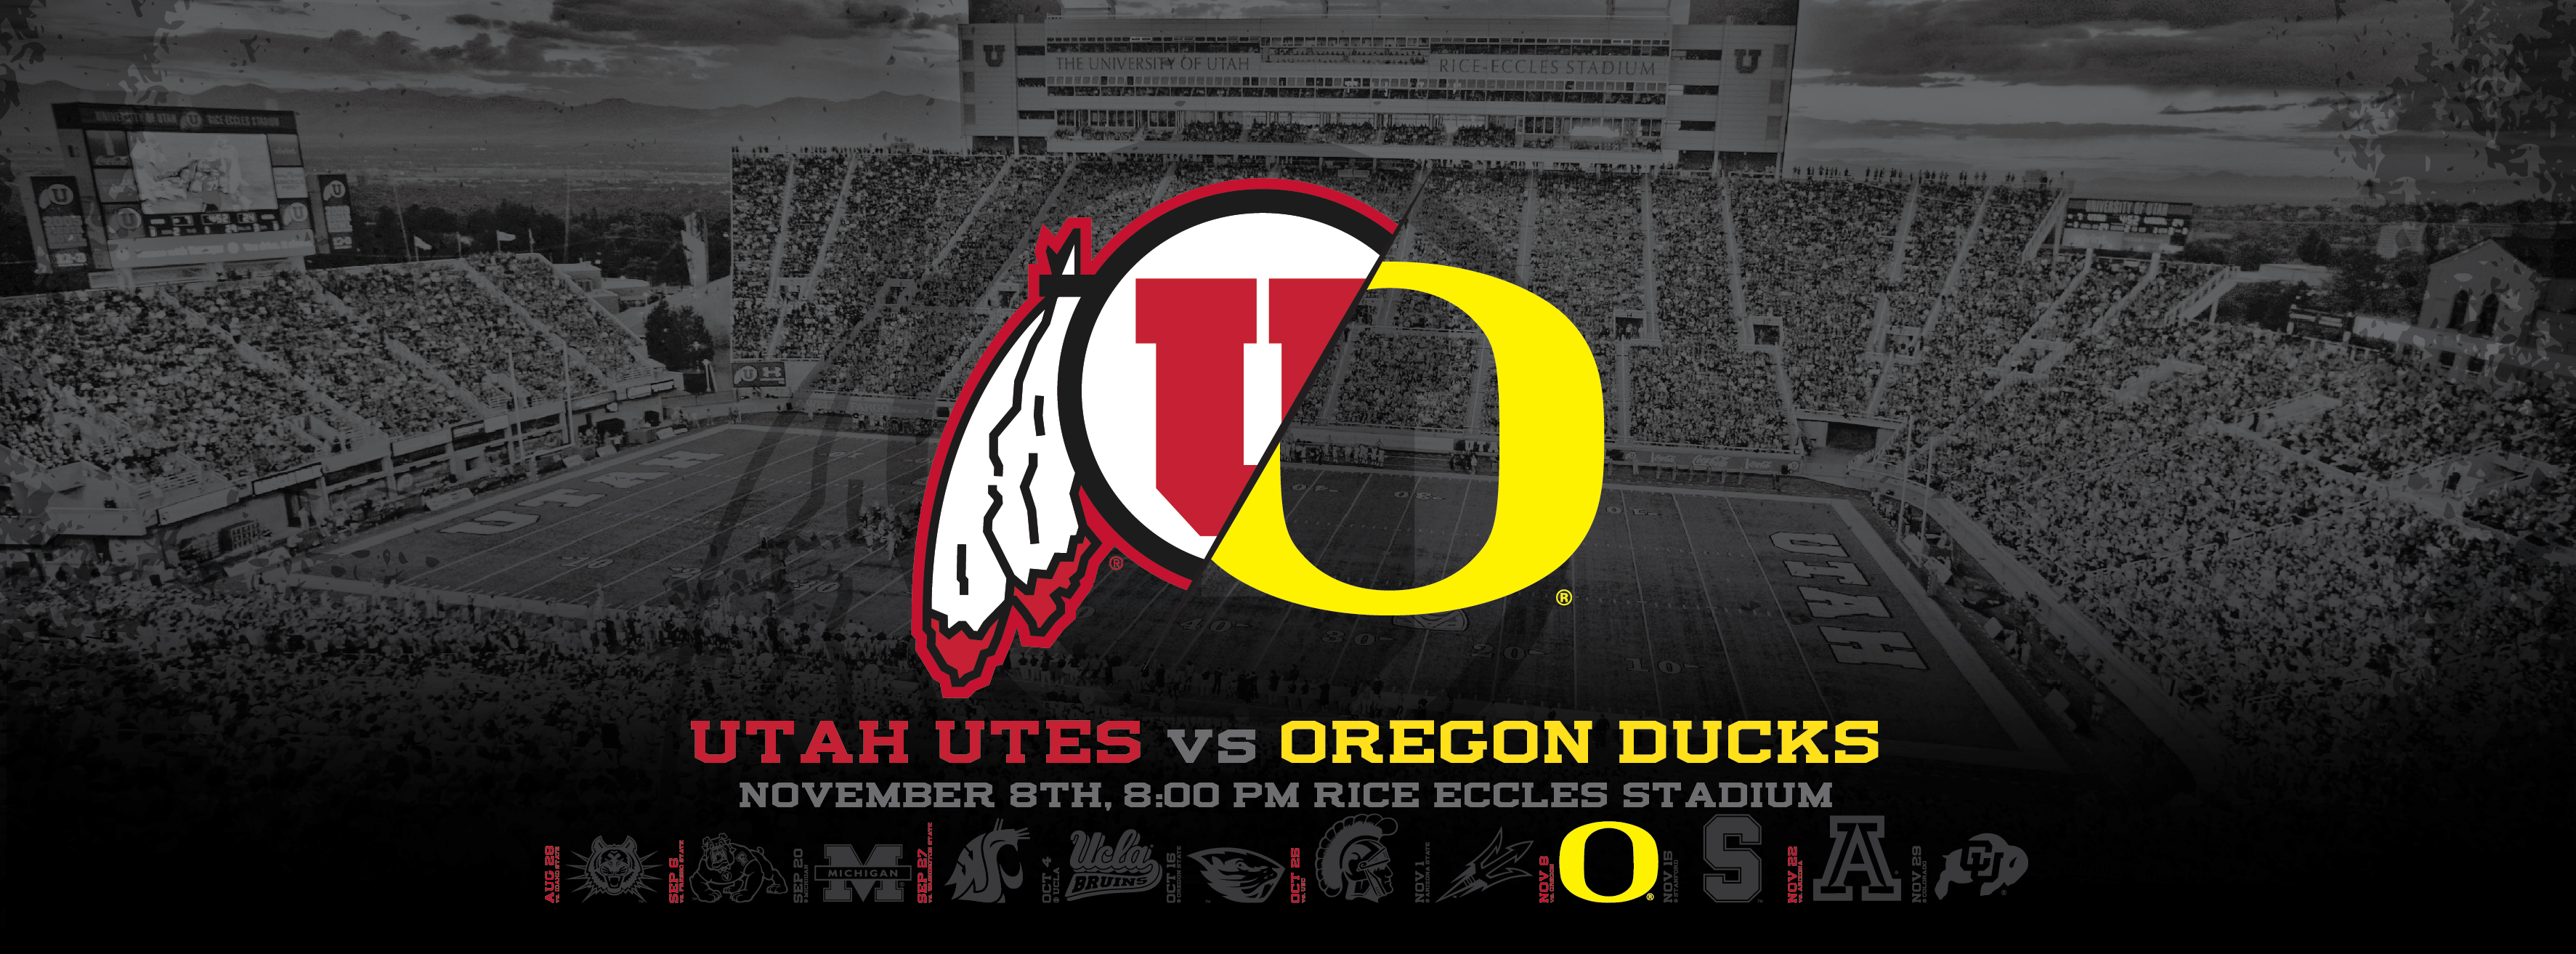 Utah Utes vs Oregon Ducks Wallpapers Dahlelama